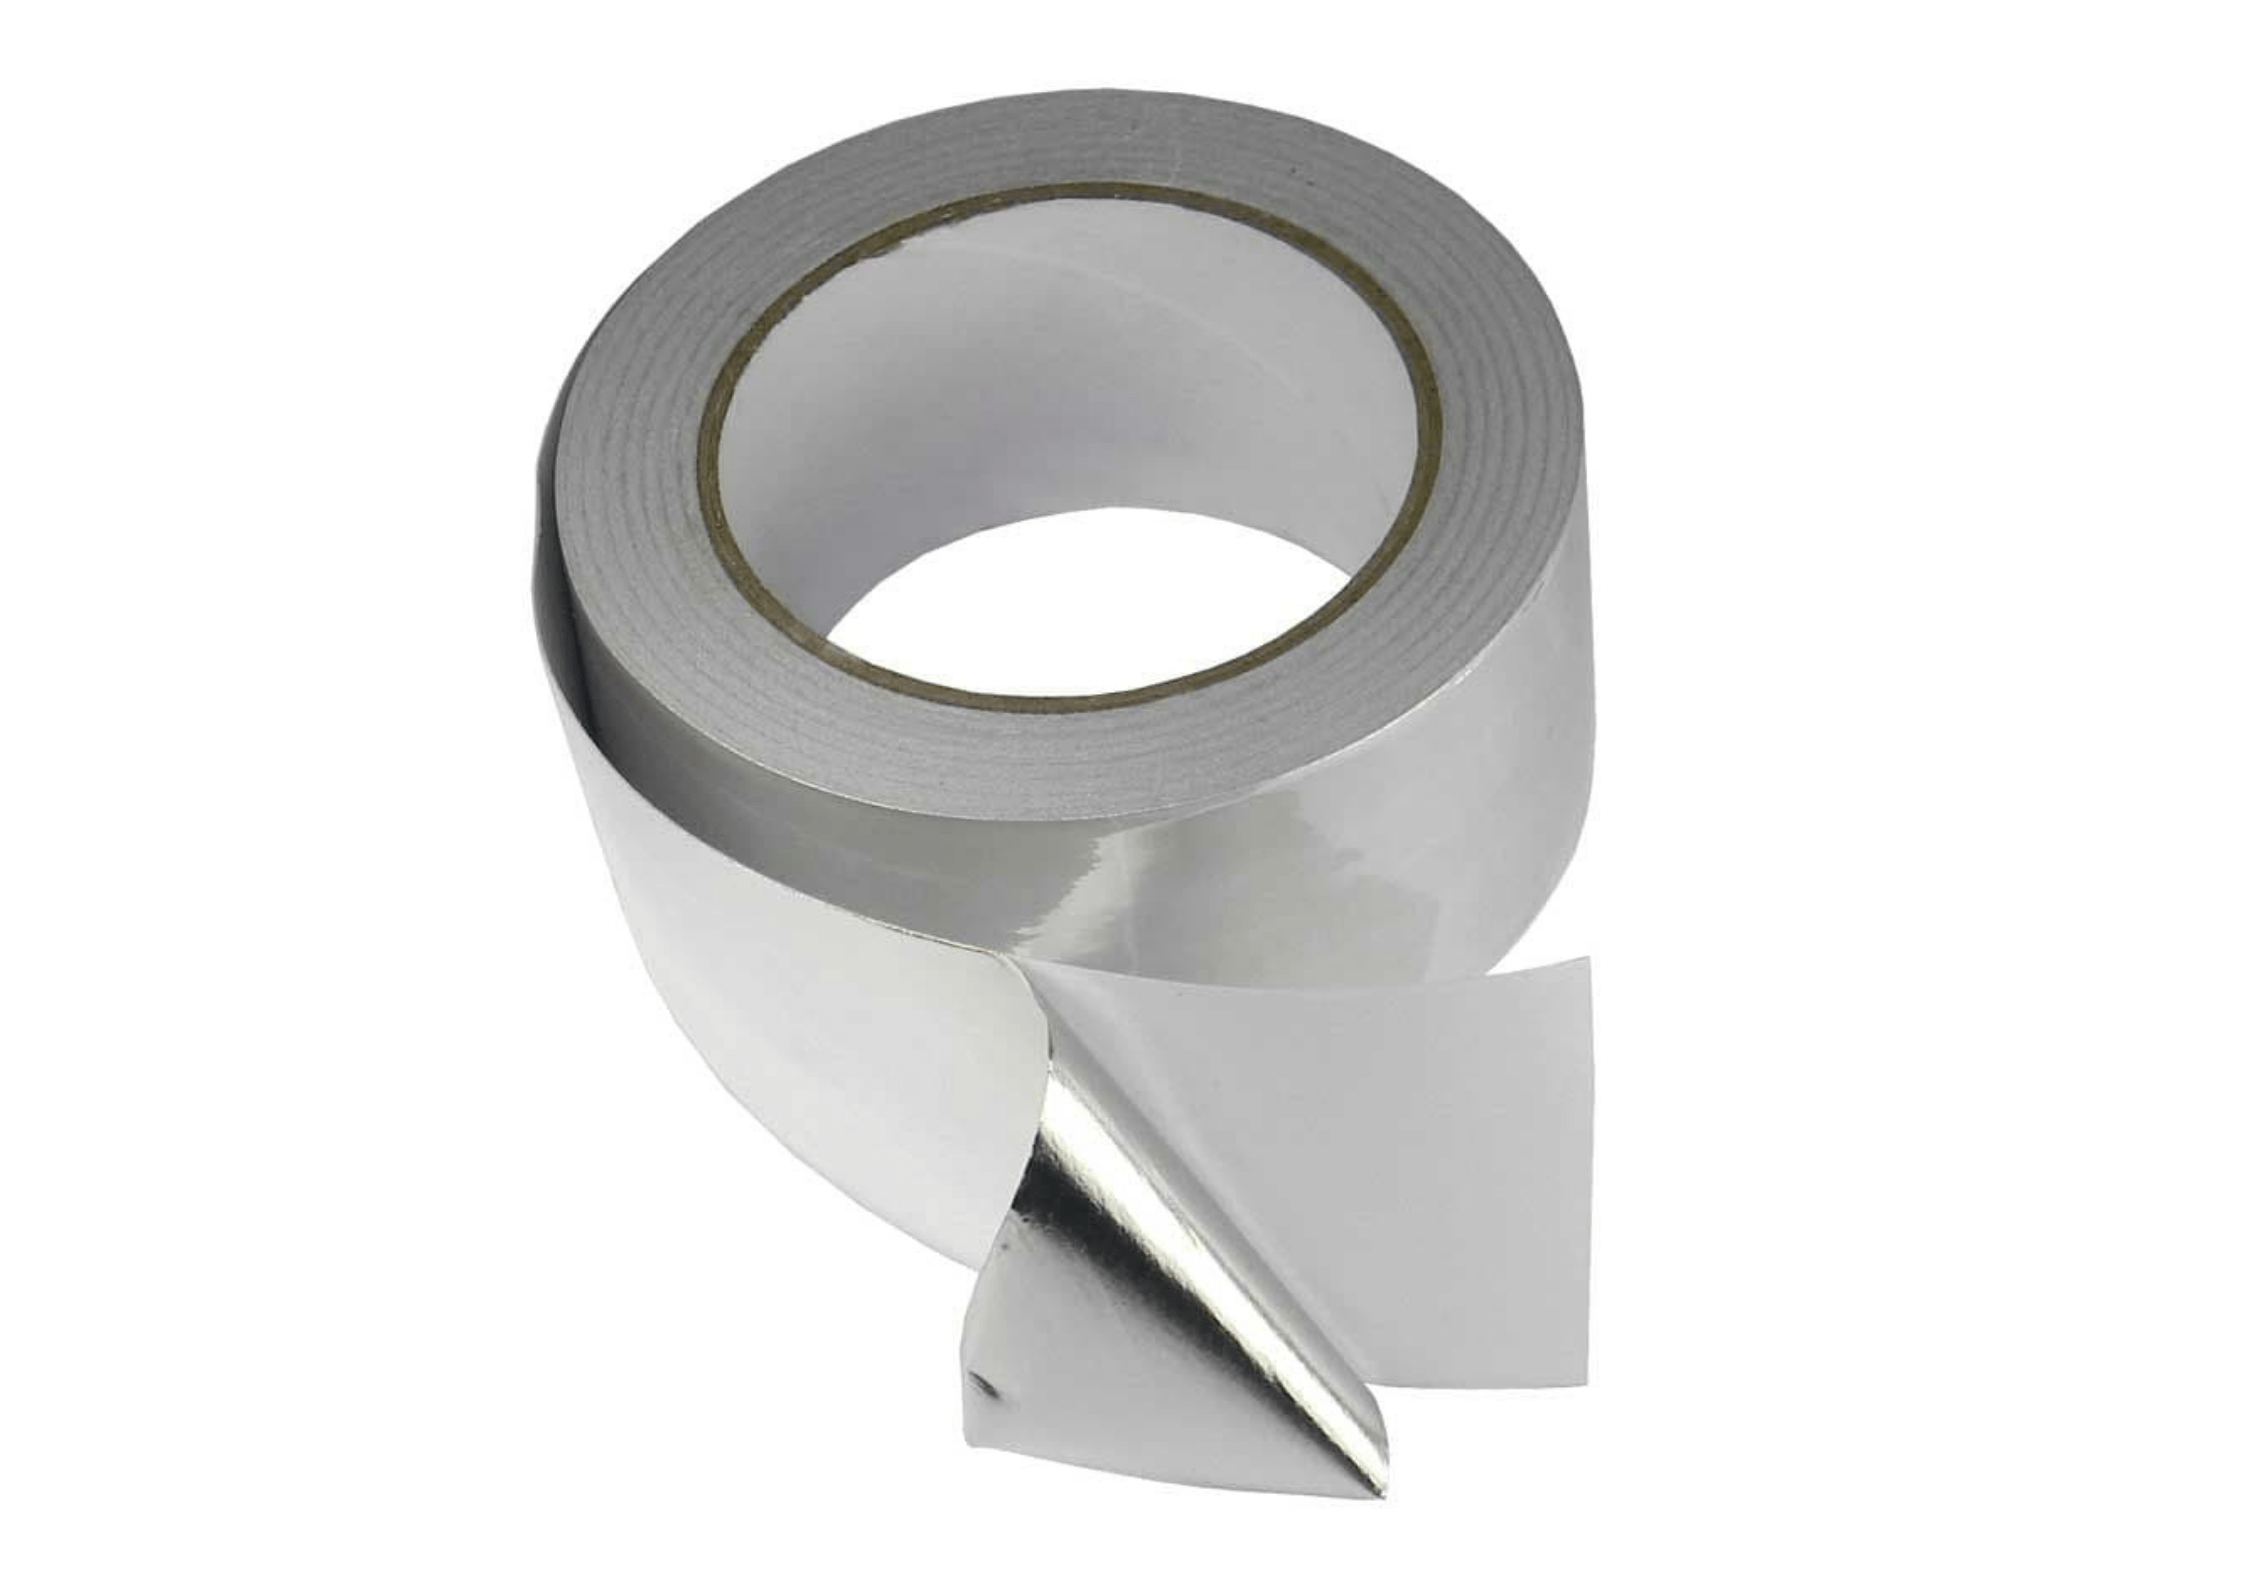 Aluminum tape - ALU TAPE